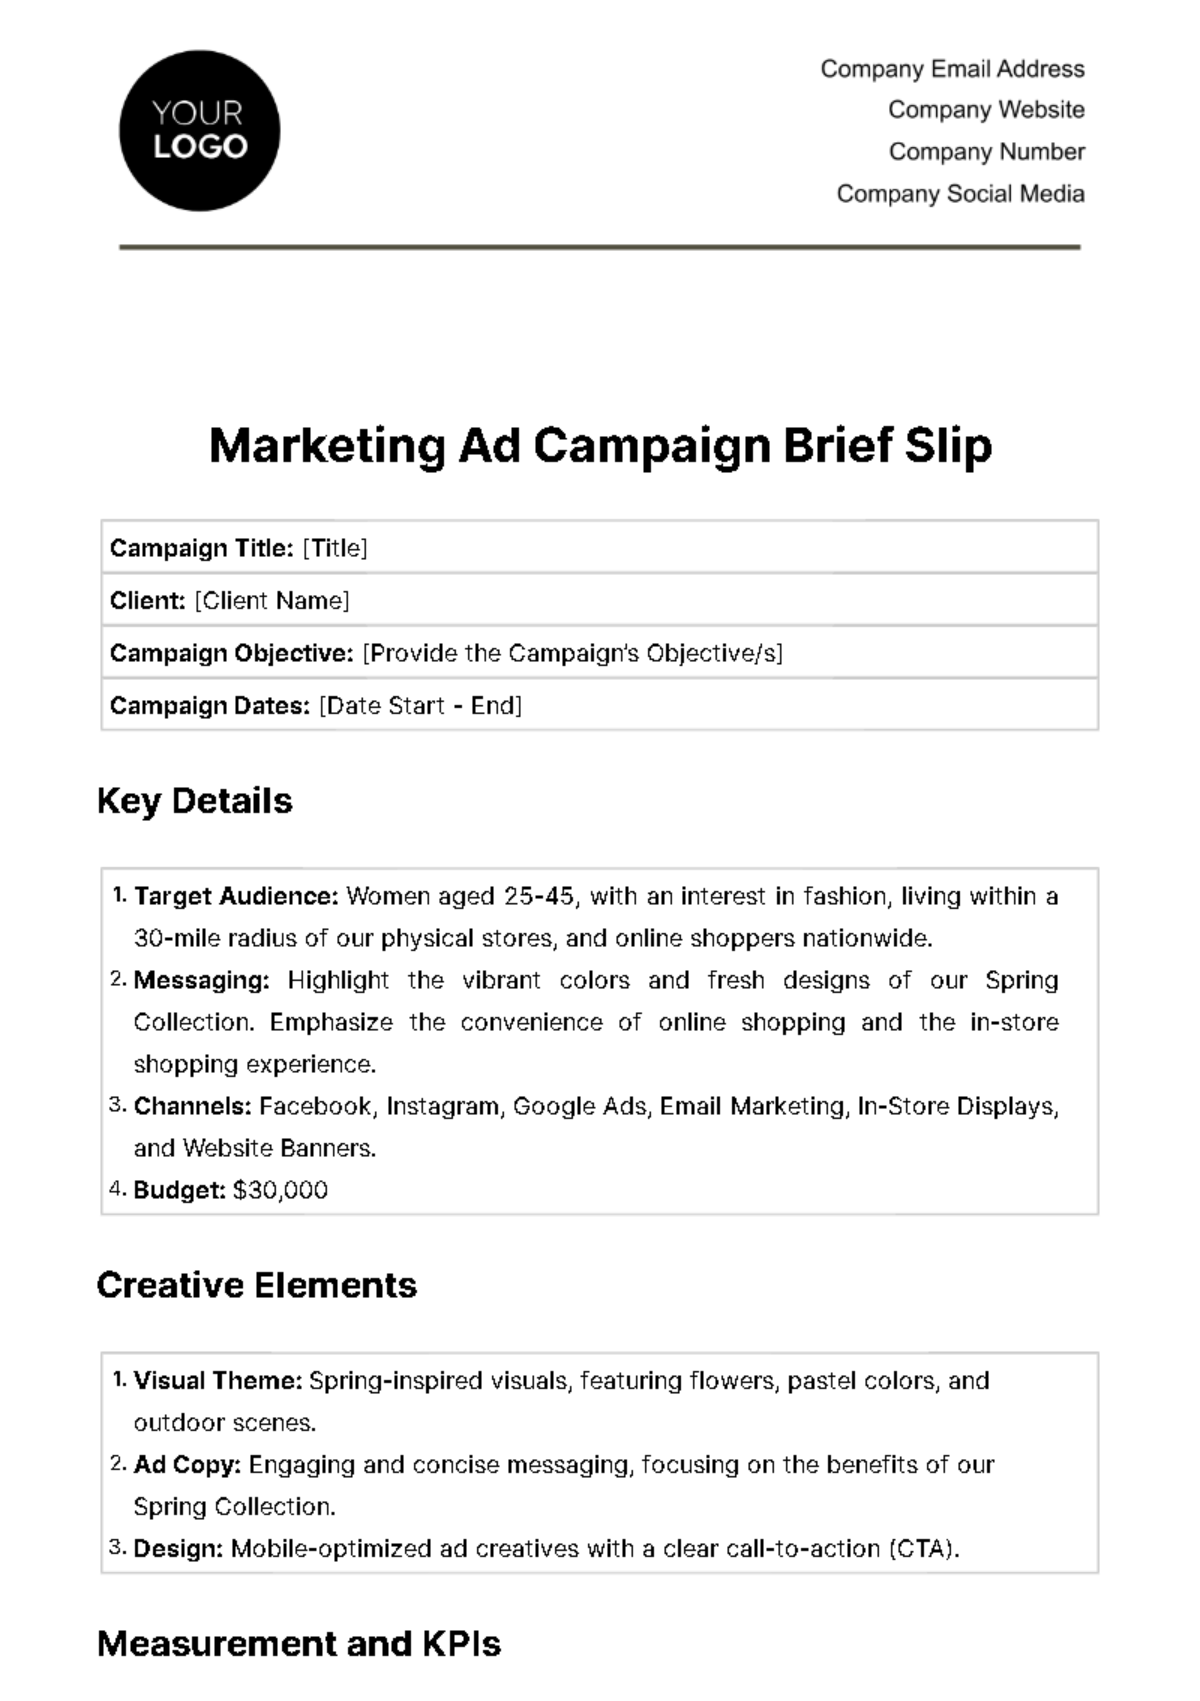 Marketing Ad Campaign Brief Slip Template